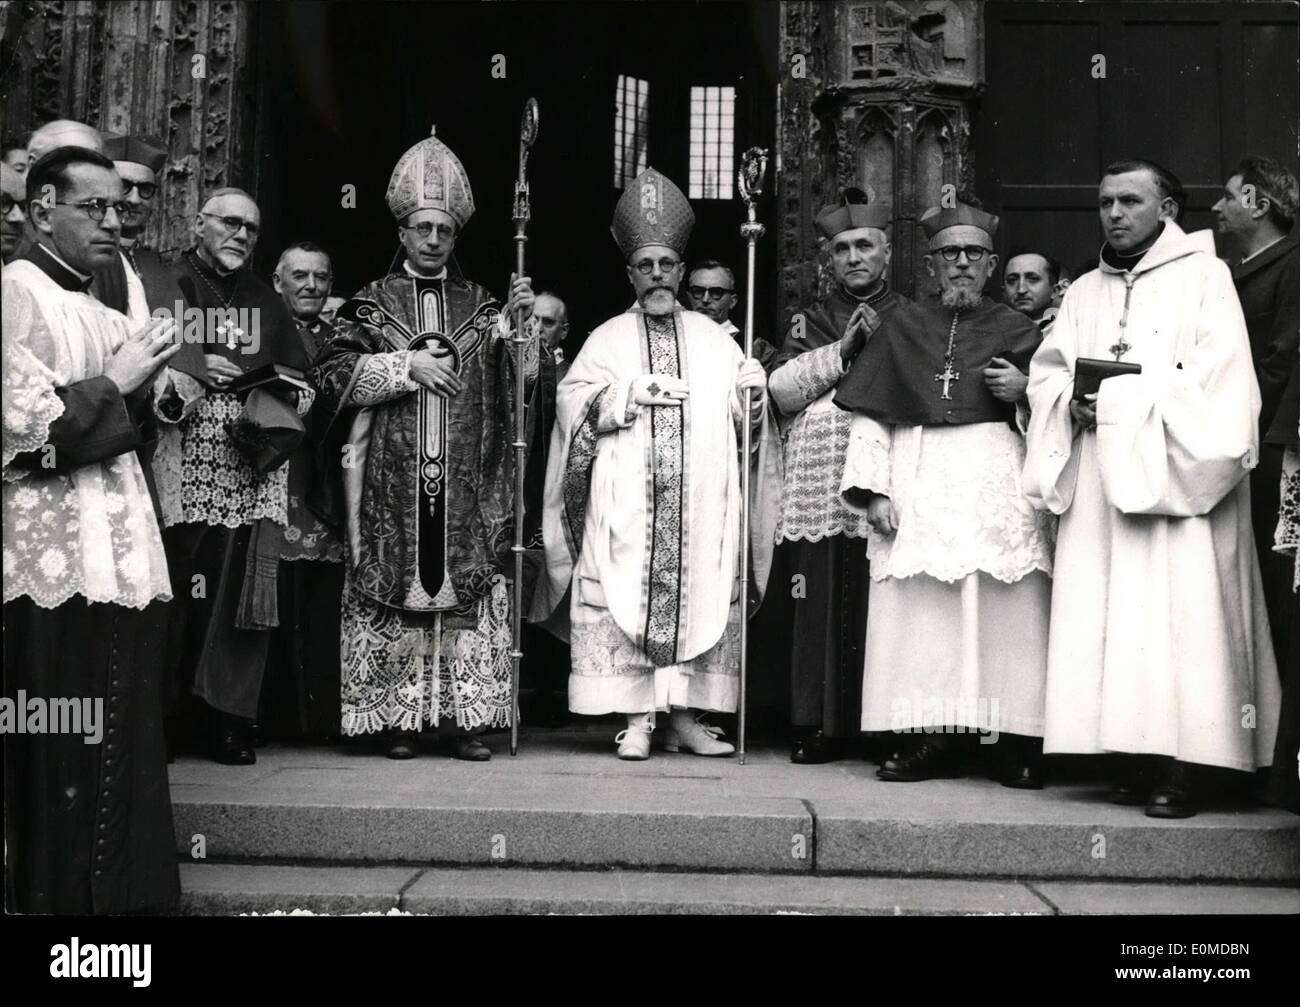 10 octobre 1954 - Mgr Dédié : MGR. Villepelet (robe blanche et la mitre) qui a été consacré évêque de l'Afrique Noire au cours de la cérémonie à la cathédrale de Nantes hier. Sur la gauche est MGR. Aubin, Vicaire Apostolique d'Solomn Îles. Banque D'Images